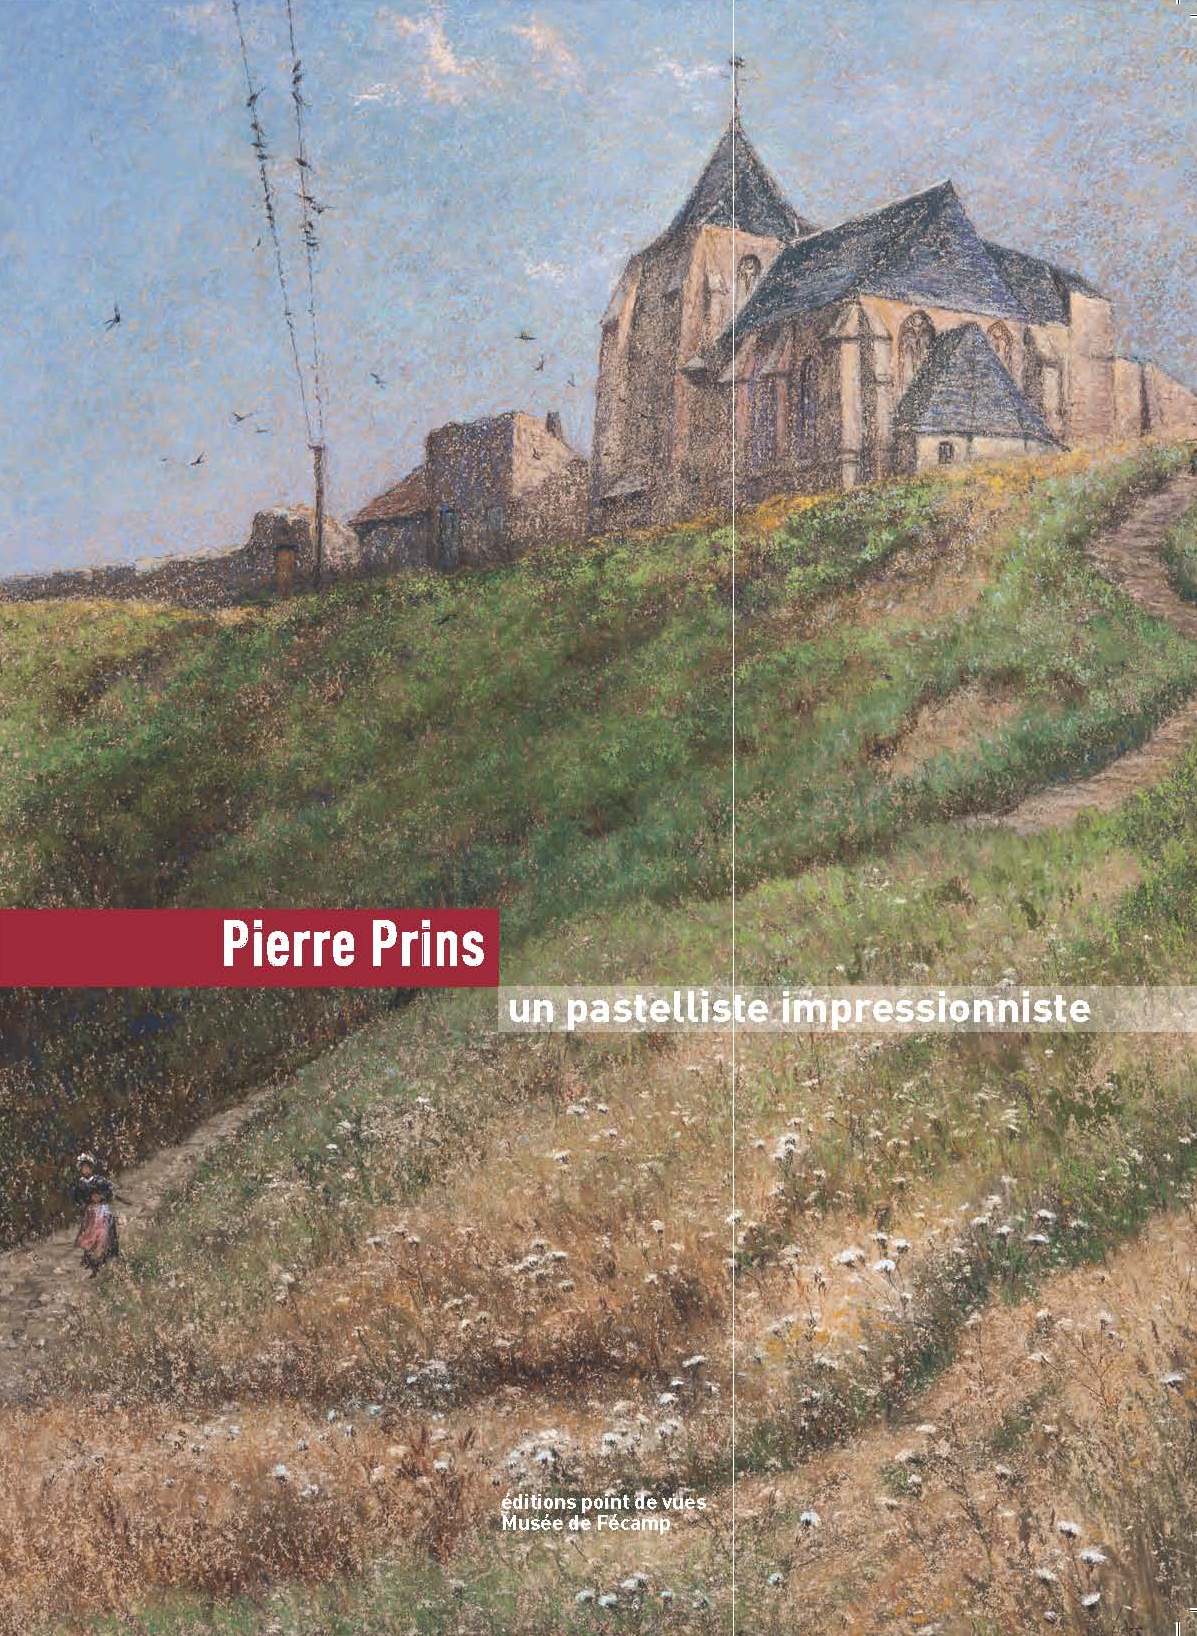 Pierre Prins, un pastelliste impressionniste